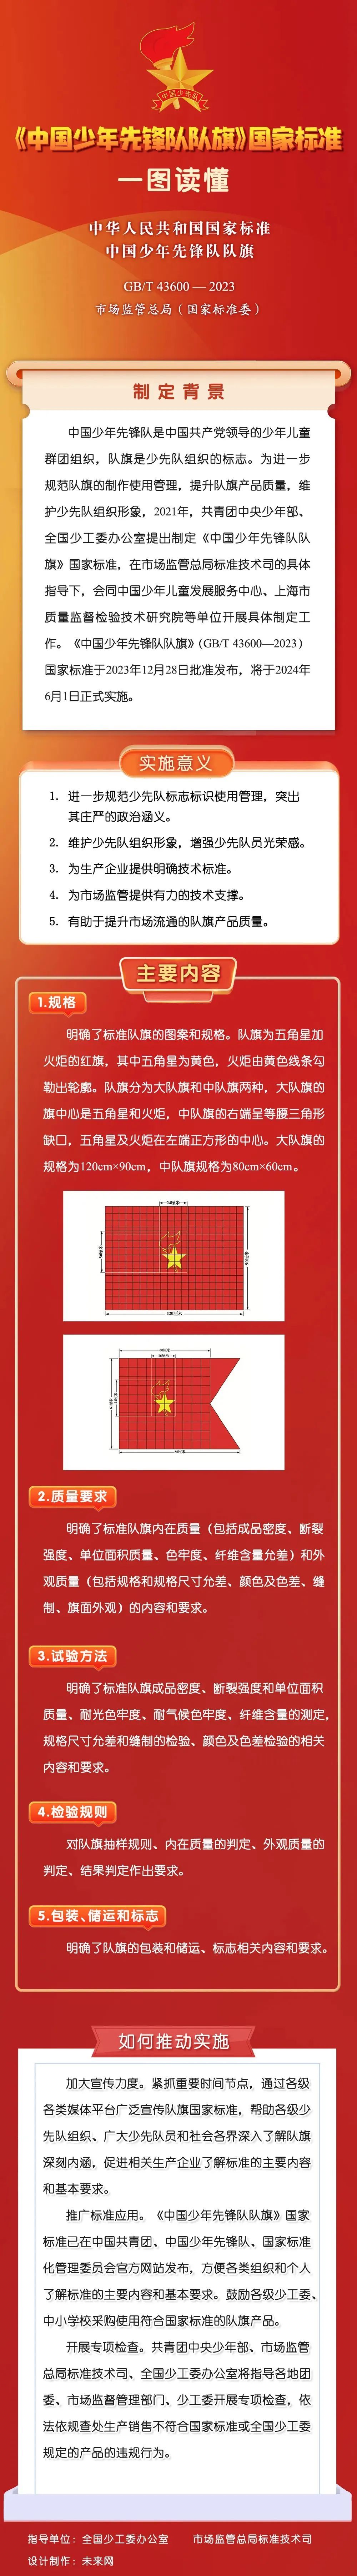 【融媒关注】《中国少年先锋队队旗》国家标准6月1日正式实施